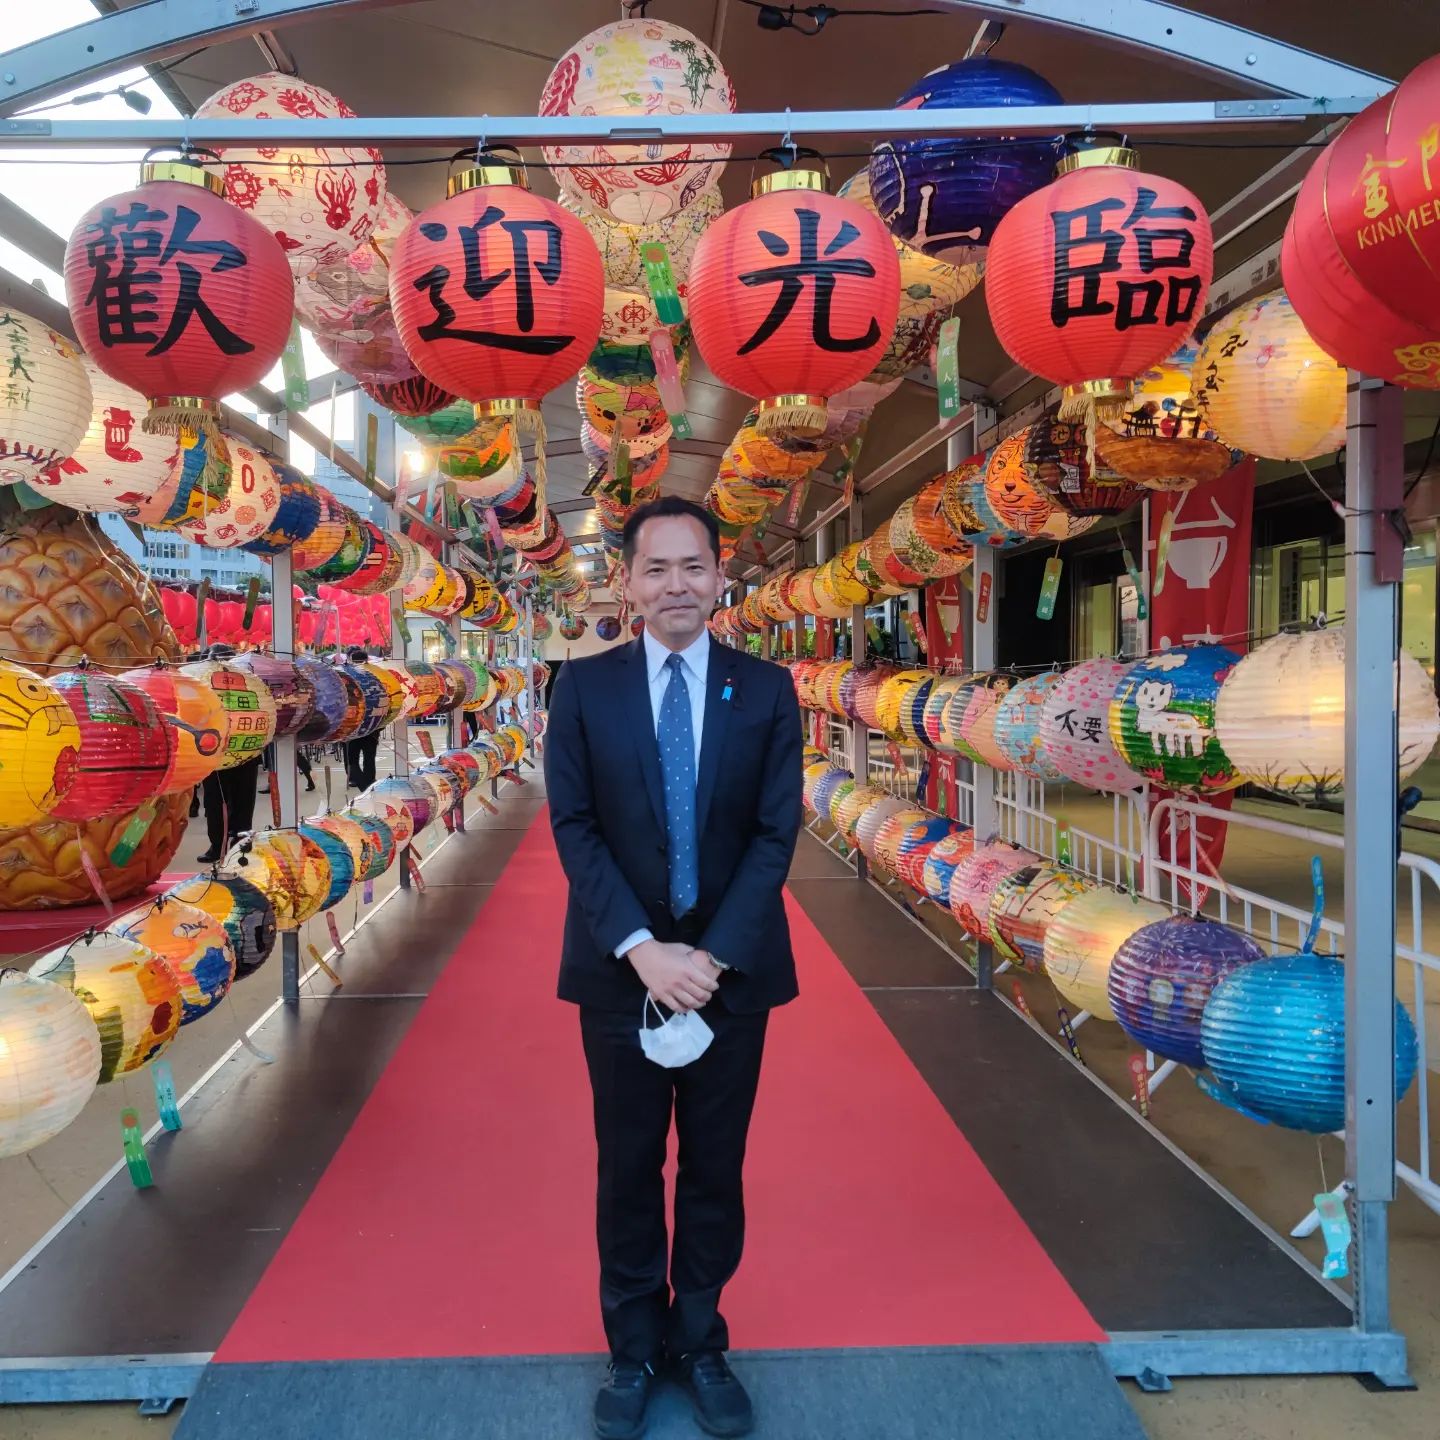 [ 【東京Tower台湾祭り】（～5月8日）台湾議員連盟のメンバーとして、台湾の夜市をイメージした催事にお邪魔する。2年ぶりの外呑み、アジアの街角っぽさ、2重の意味で懐かしい、、そしてビアガーデンの様な雰囲気。写真は、台湾代表部の次長の林氏と新任の林氏。普通に同僚の様に接してくれる所が嬉しい。去年のパイナップルの時のお礼を、不意に言われる。https://www.taiwanfesta.com/202204-tokyotower/ ]